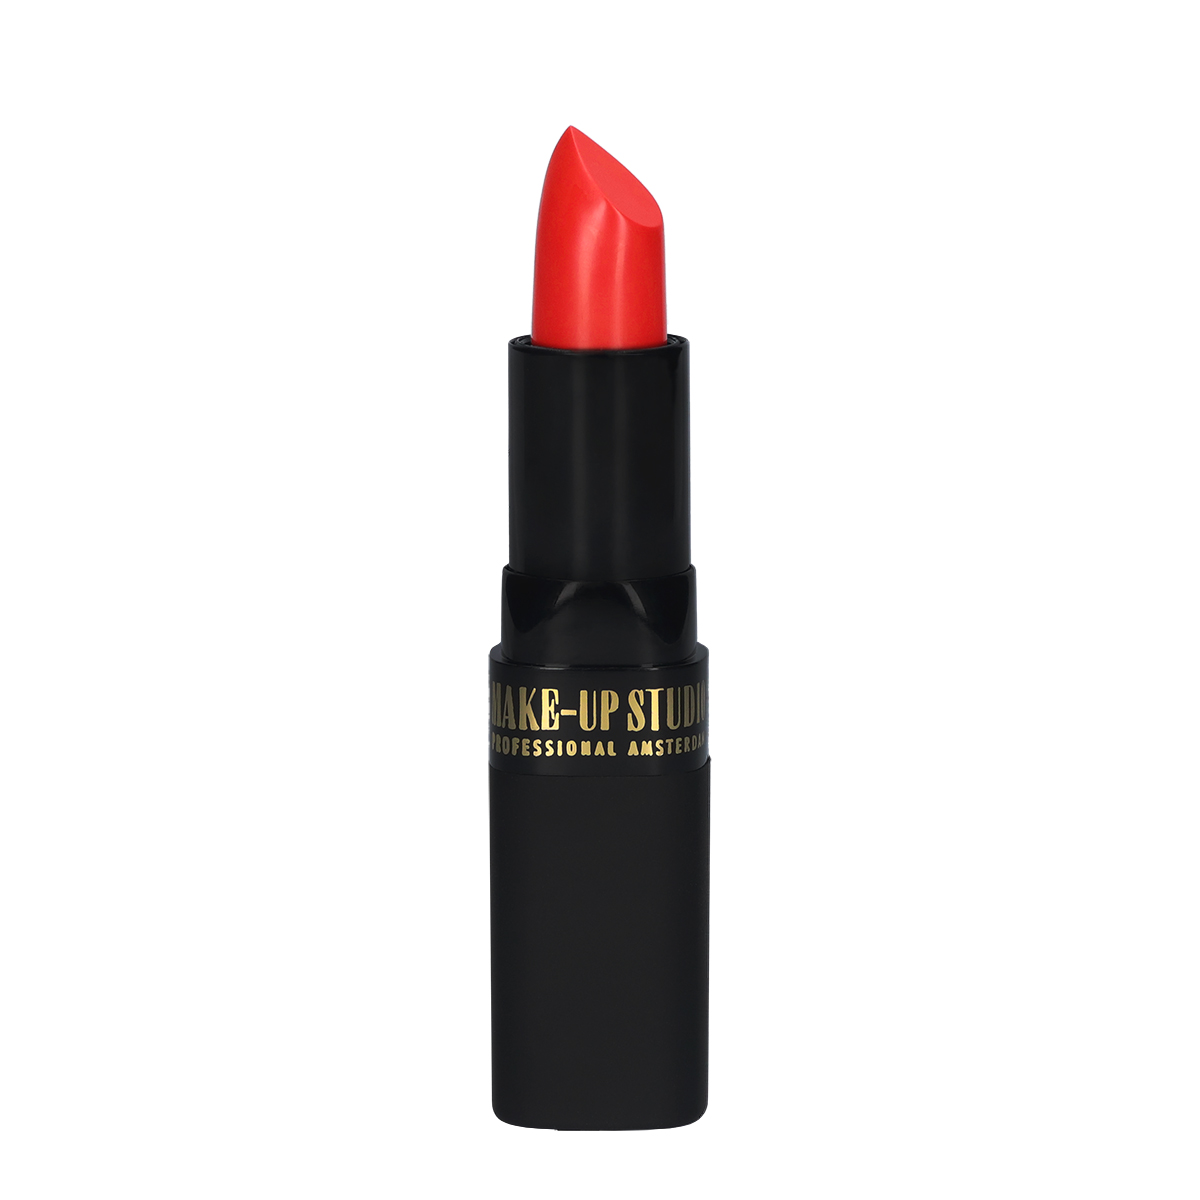 Make-up Studio Lipstick Lippenstift - 20